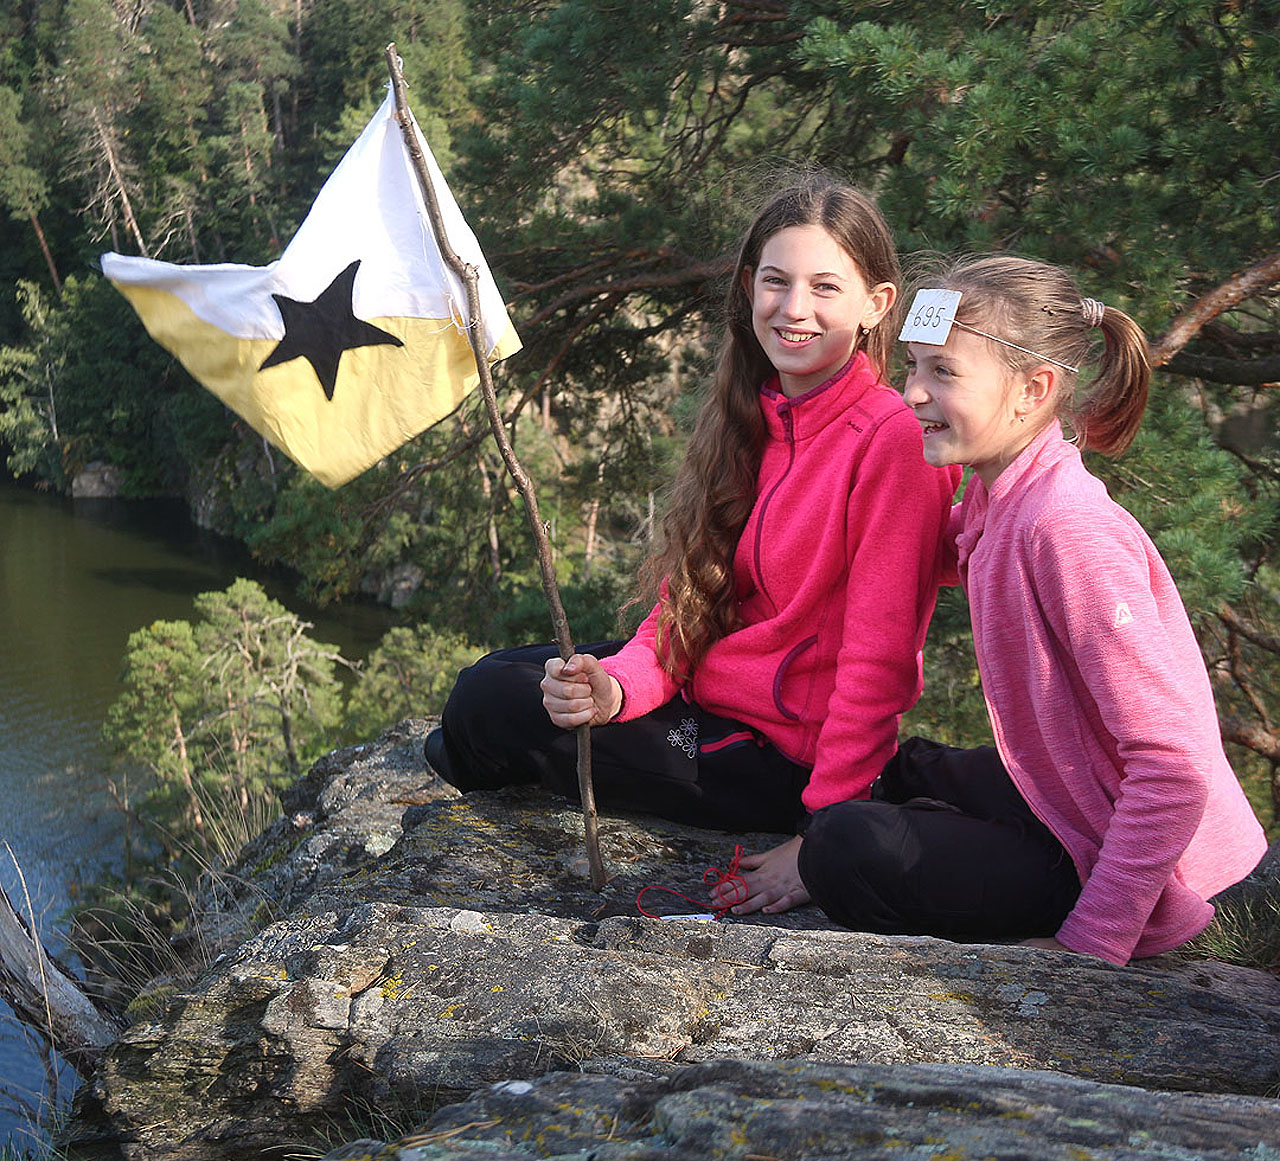 Vítězná děvčata se svojí vlajkou slaví na skále nad vodami jezera.